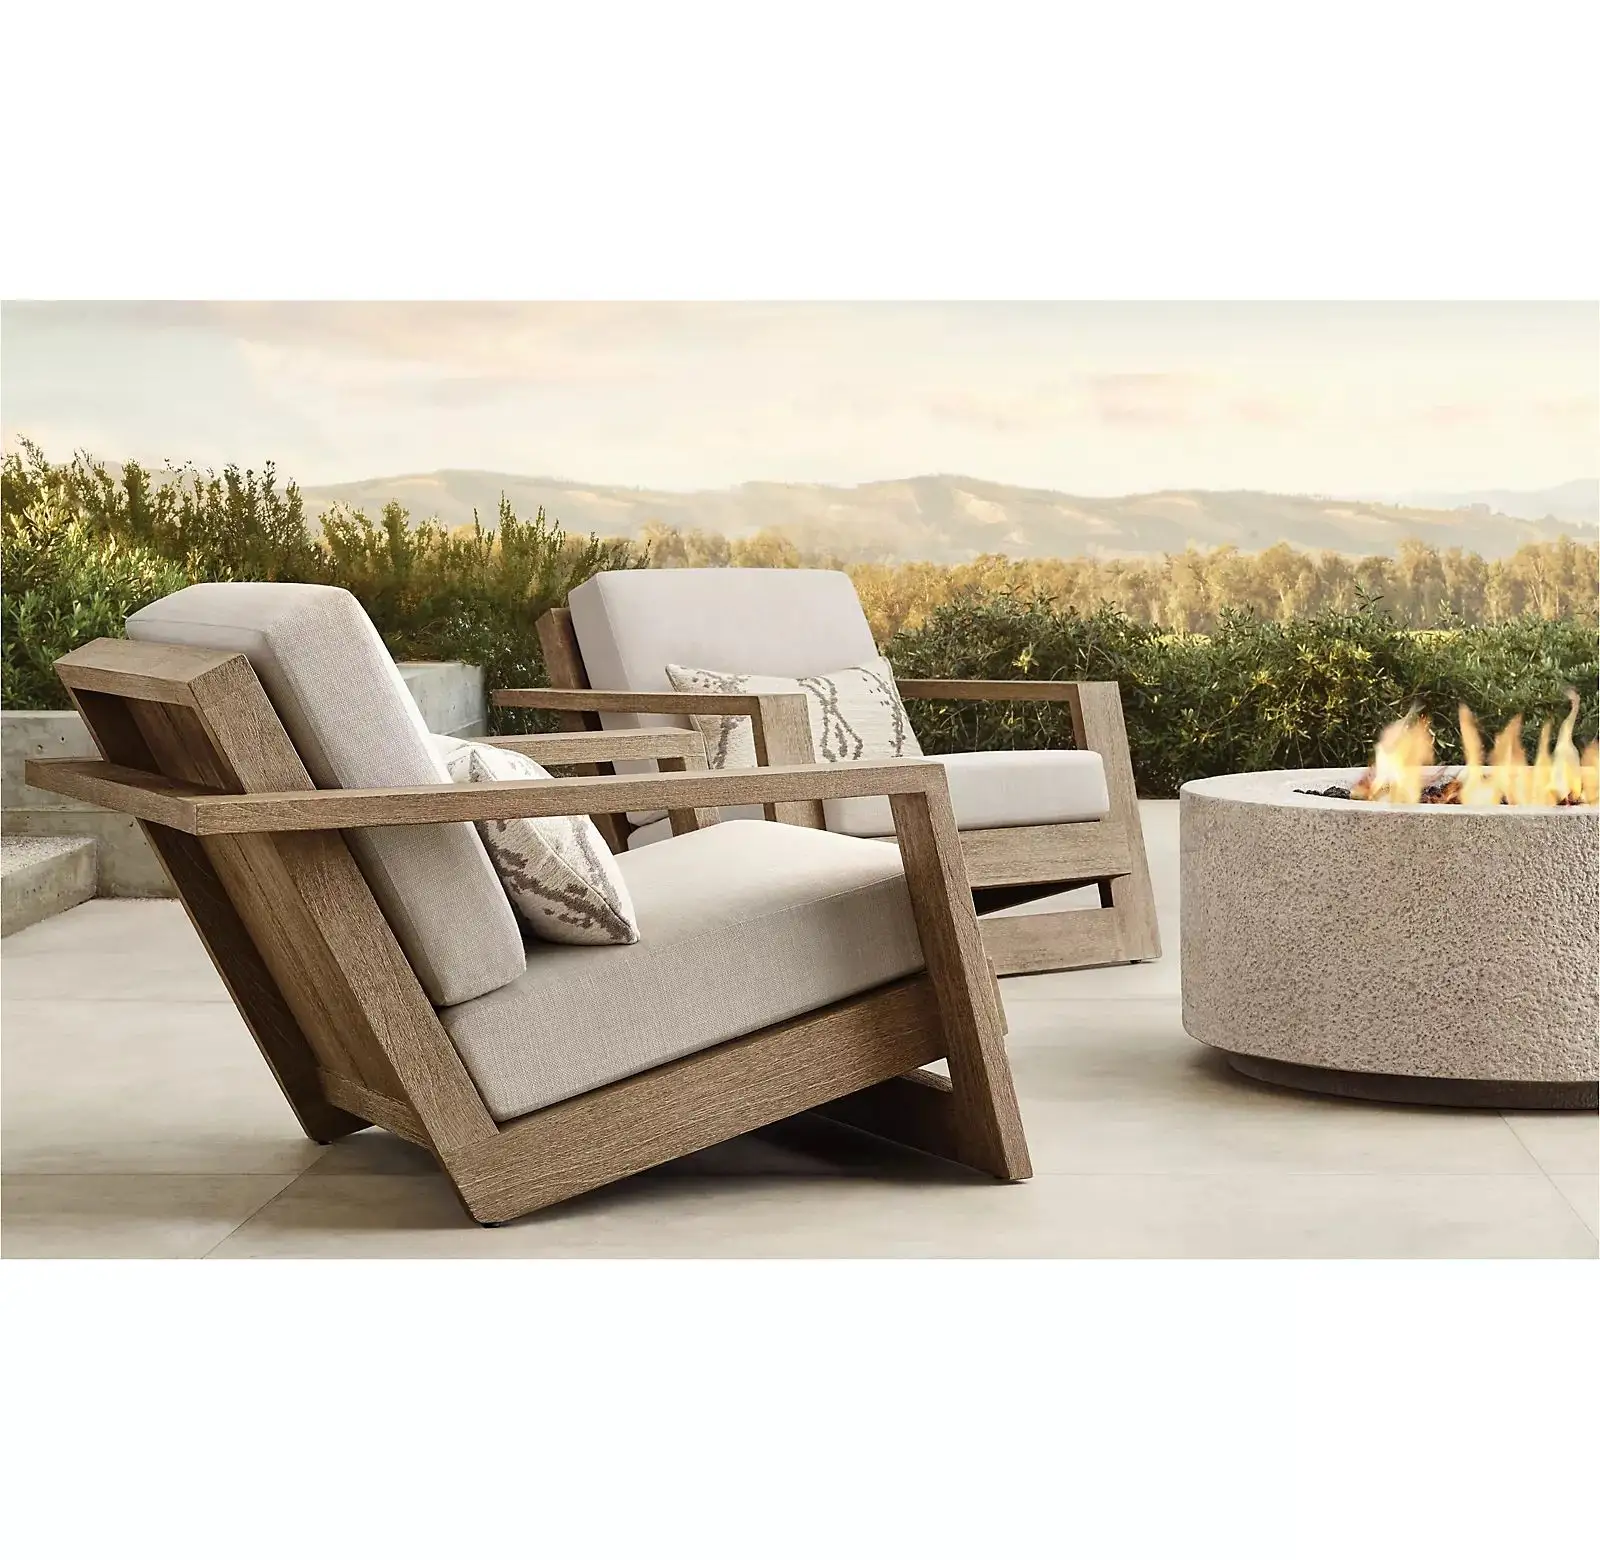 كرسي استراحة عصري من Zeen للأماكن في الهواء الطلق مصنوع من خشب الساج كرسي أريكة فردي خشبي خشبي سريع الجفاف مصنوع من القطن أثاث من خشب الساج